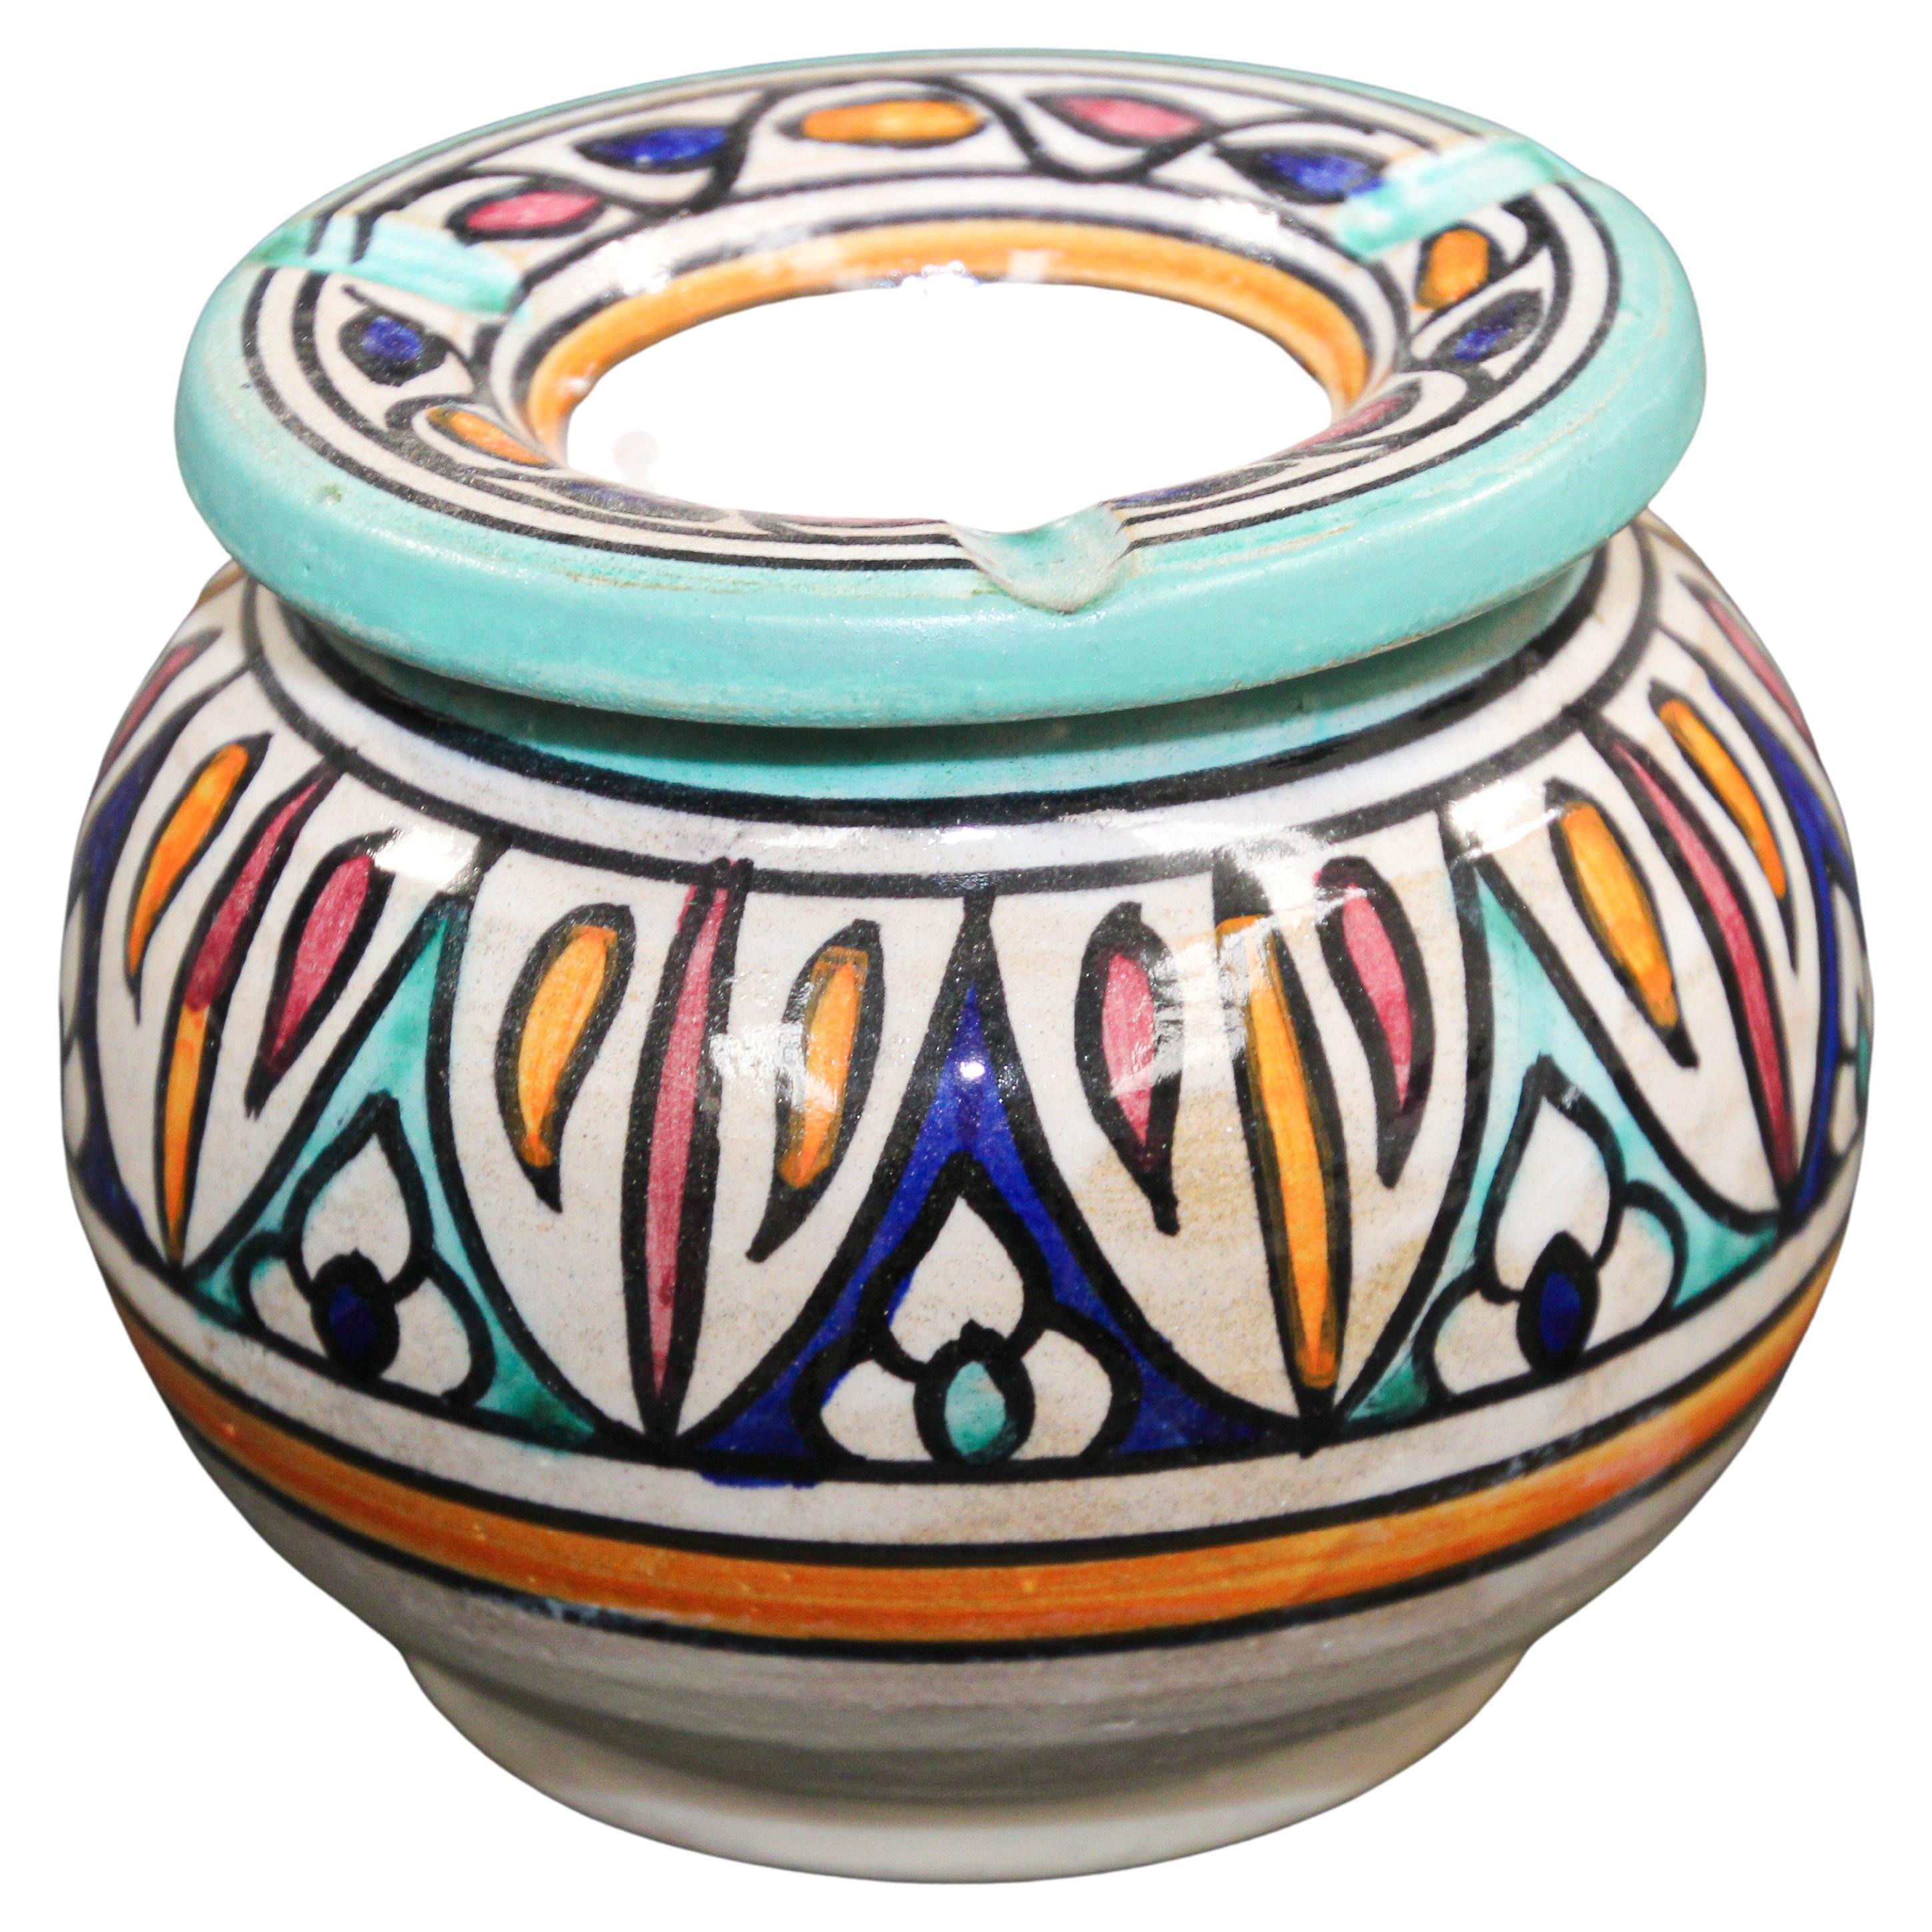 Cendrier vintage marocain couvert en céramique peint à la main.
Réceptacle à cendres recouvert de céramique marocaine fabriquée à la main.
Ce cendrier couvert de taille moyenne peut être utilisé à l'intérieur et à l'extérieur.
S'il est utilisé à